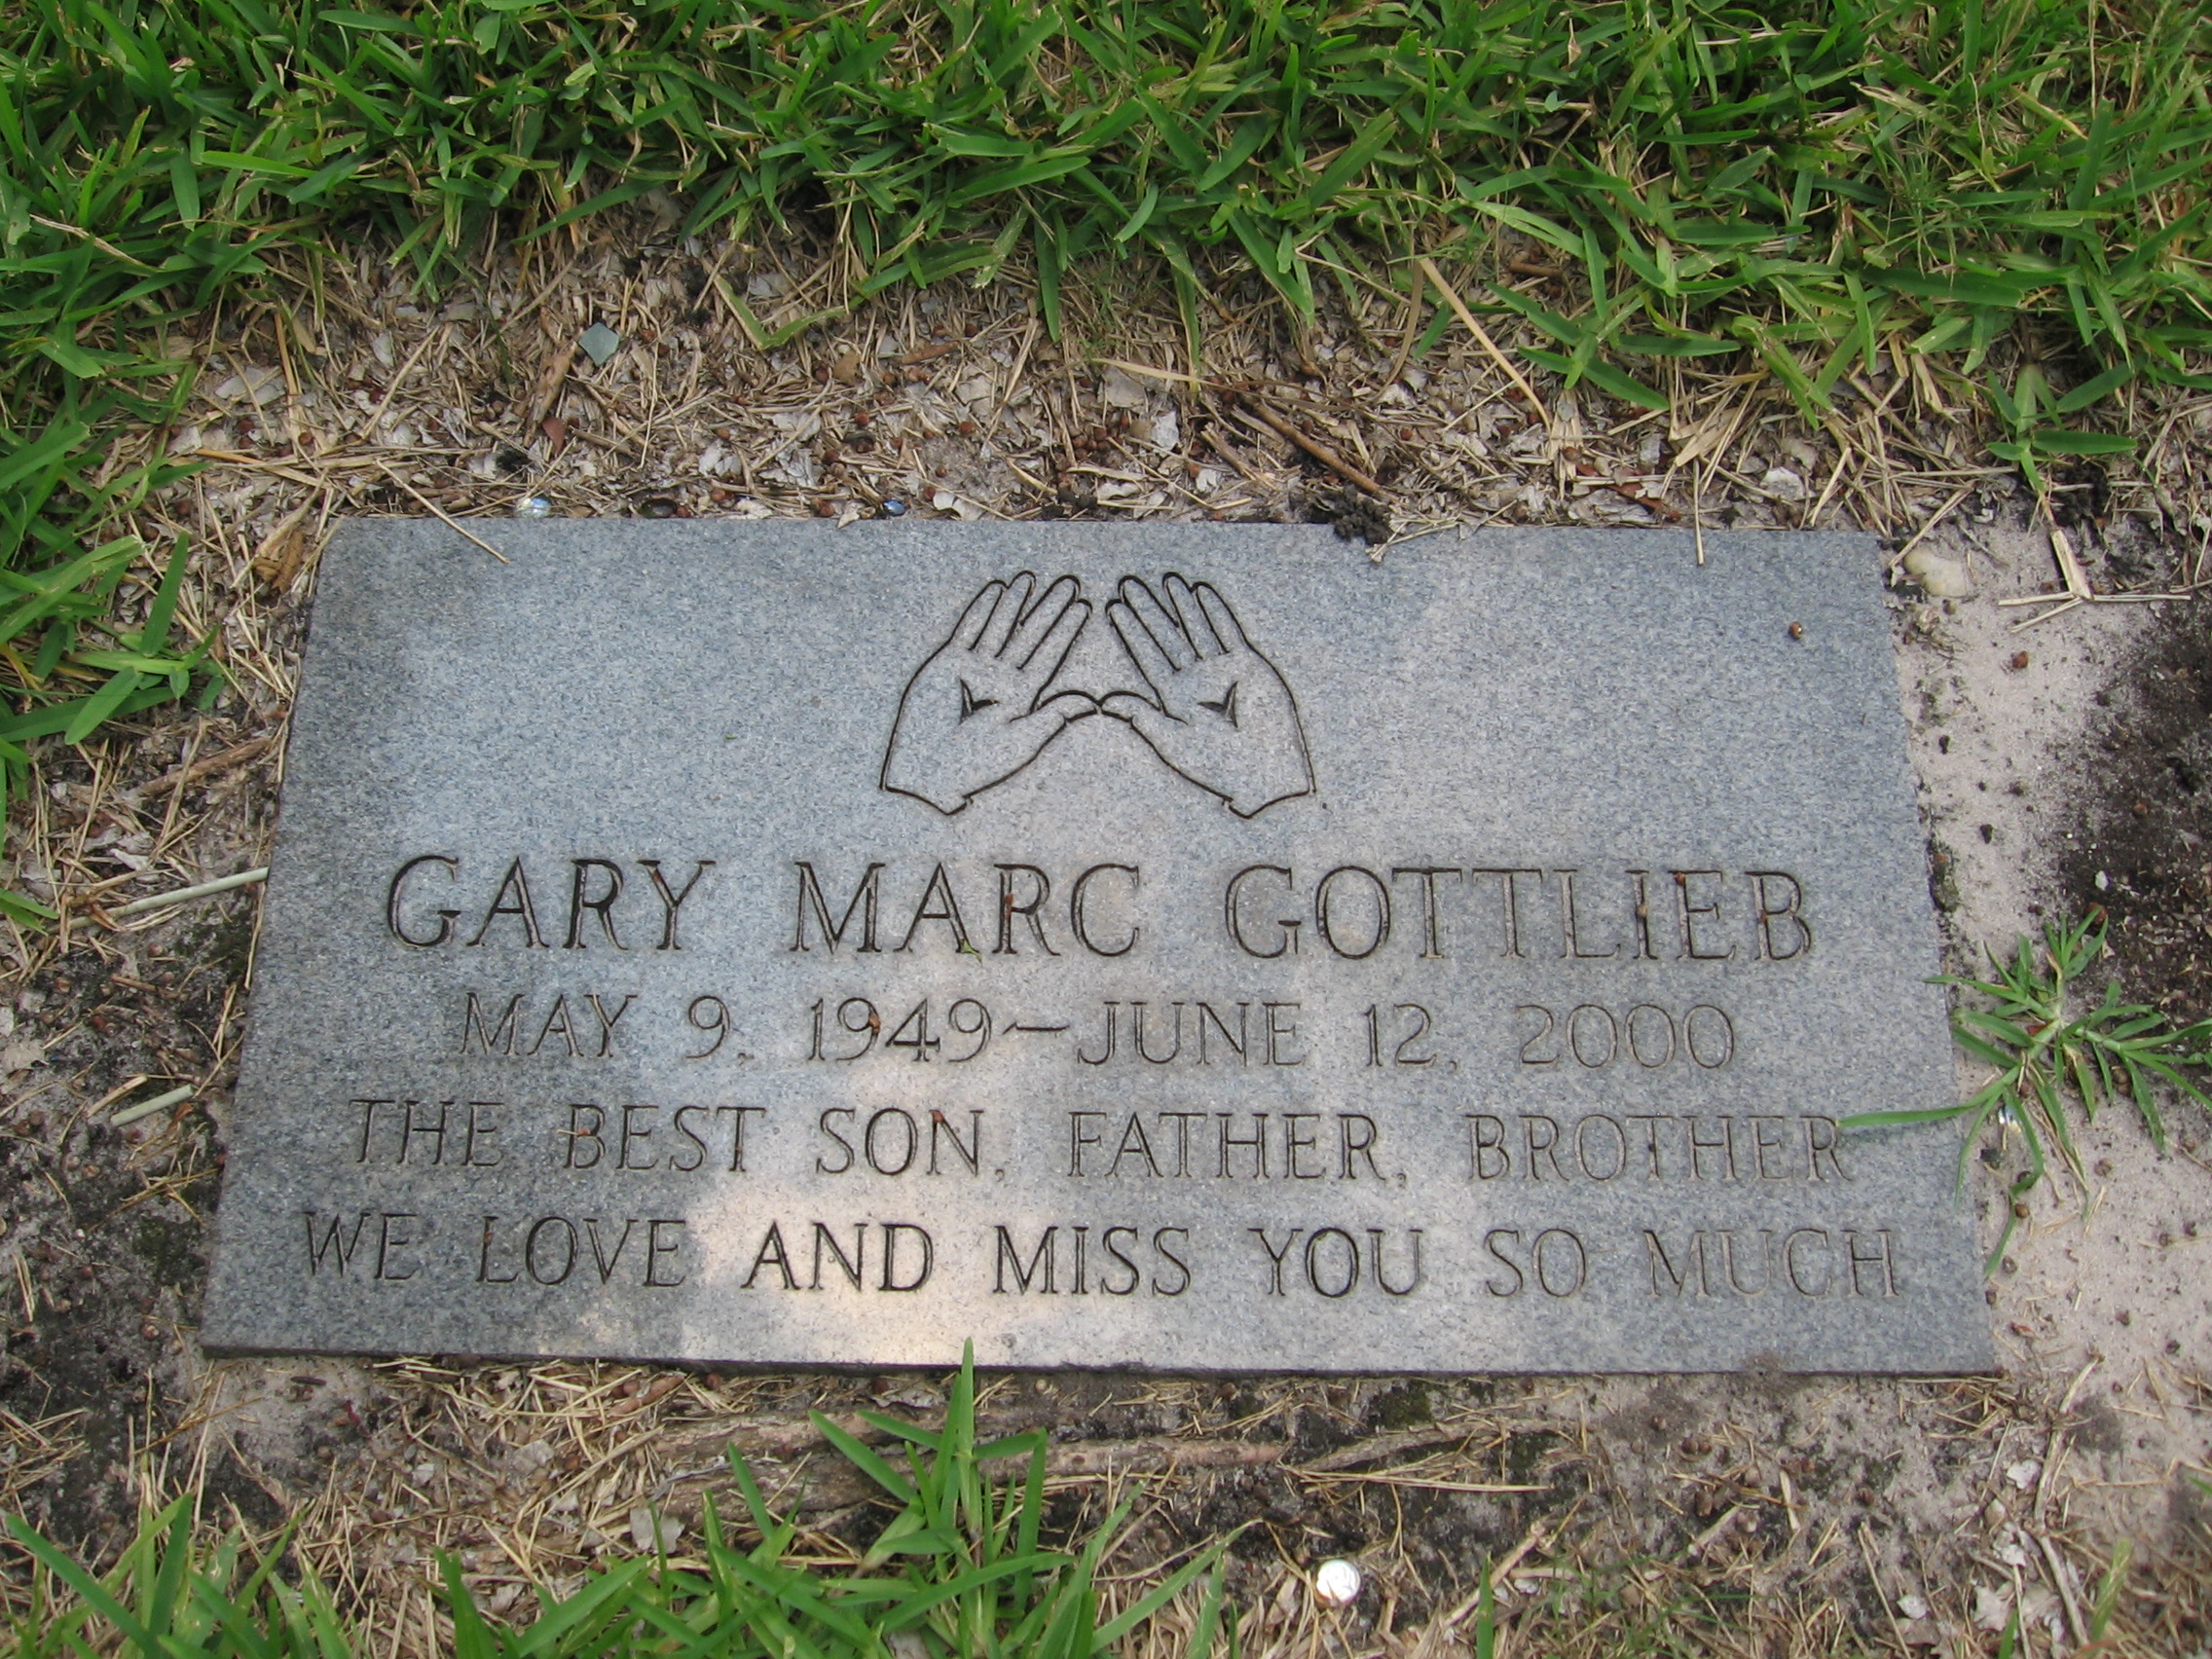 Gary Marc Gottlieb